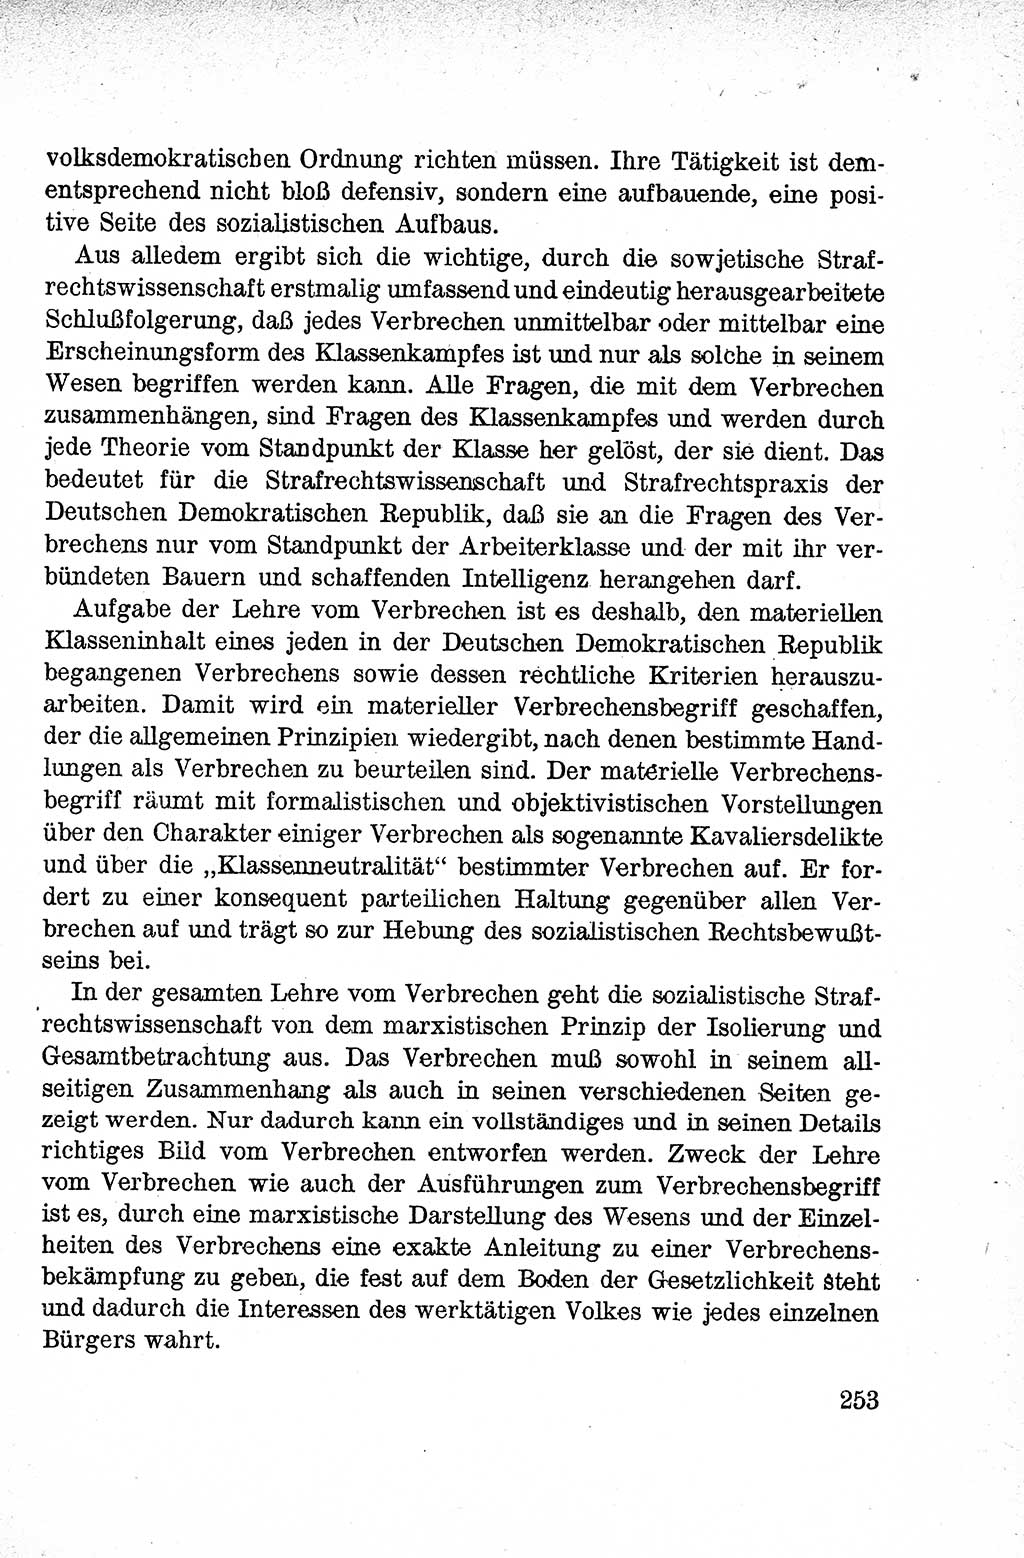 Lehrbuch des Strafrechts der Deutschen Demokratischen Republik (DDR), Allgemeiner Teil 1959, Seite 253 (Lb. Strafr. DDR AT 1959, S. 253)